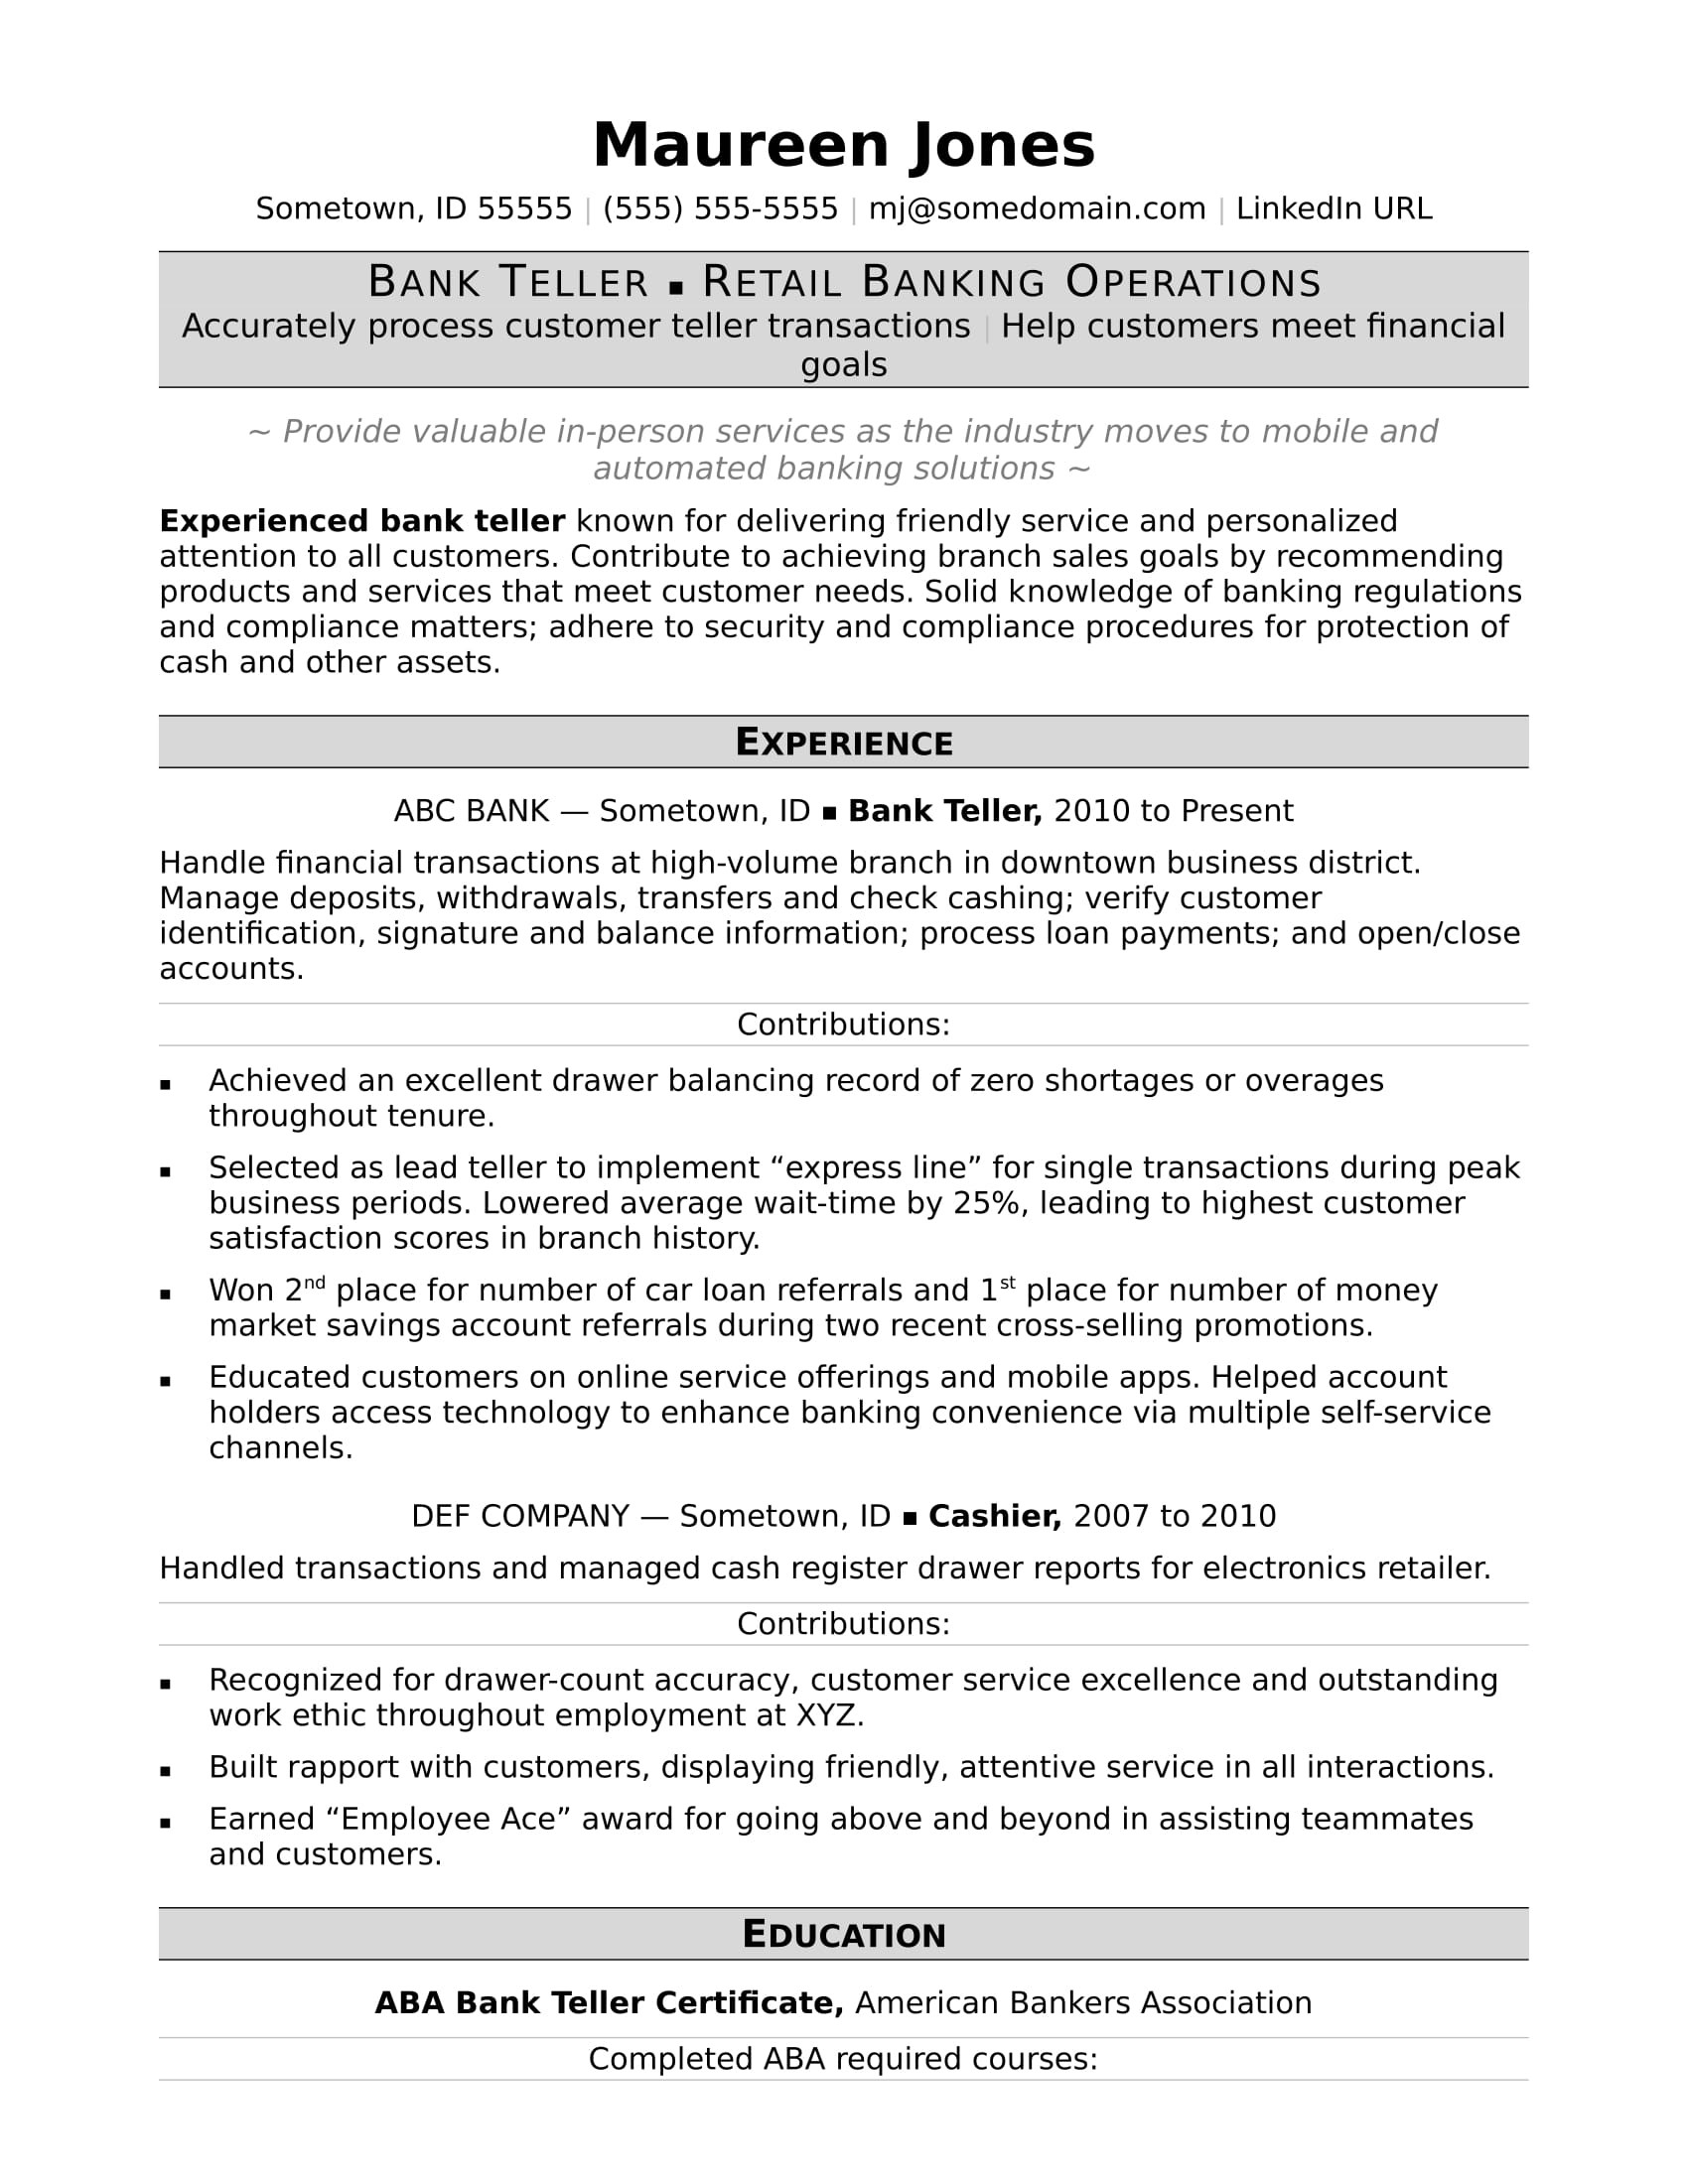 Sample Resume for Bank Clerk In India Bank Teller Resume Monster.com